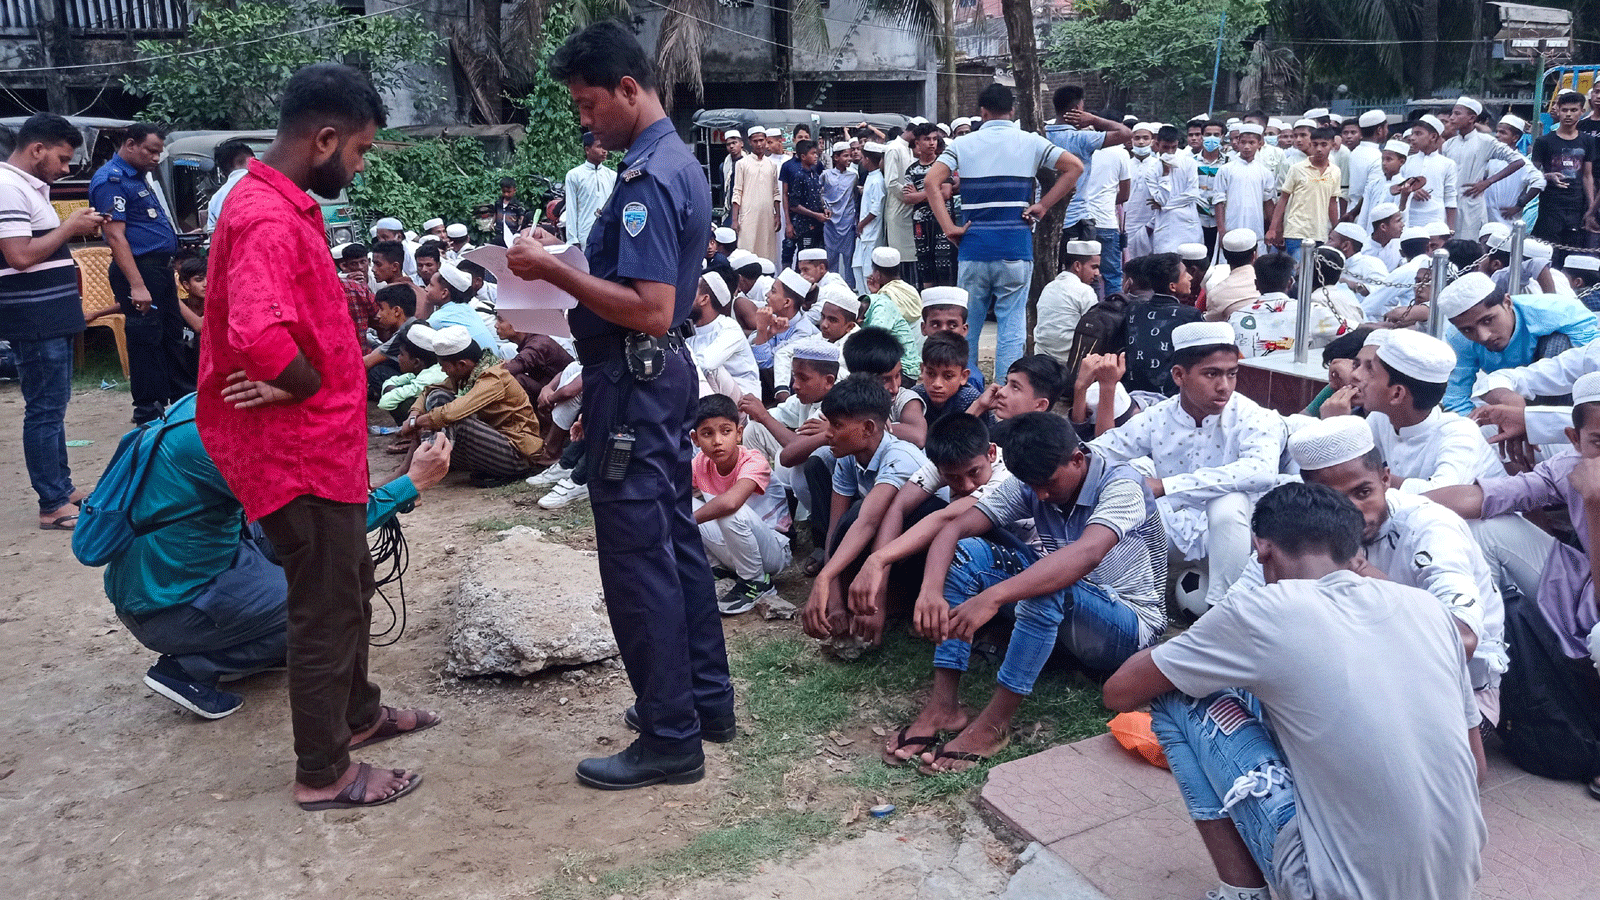 شرطي يأخذ تفاصيل اللاجئين الروهينجا الذين تم احتجازهم من الشاطئ، في مركز شرطة سادار النموذجي في كوكس بازار